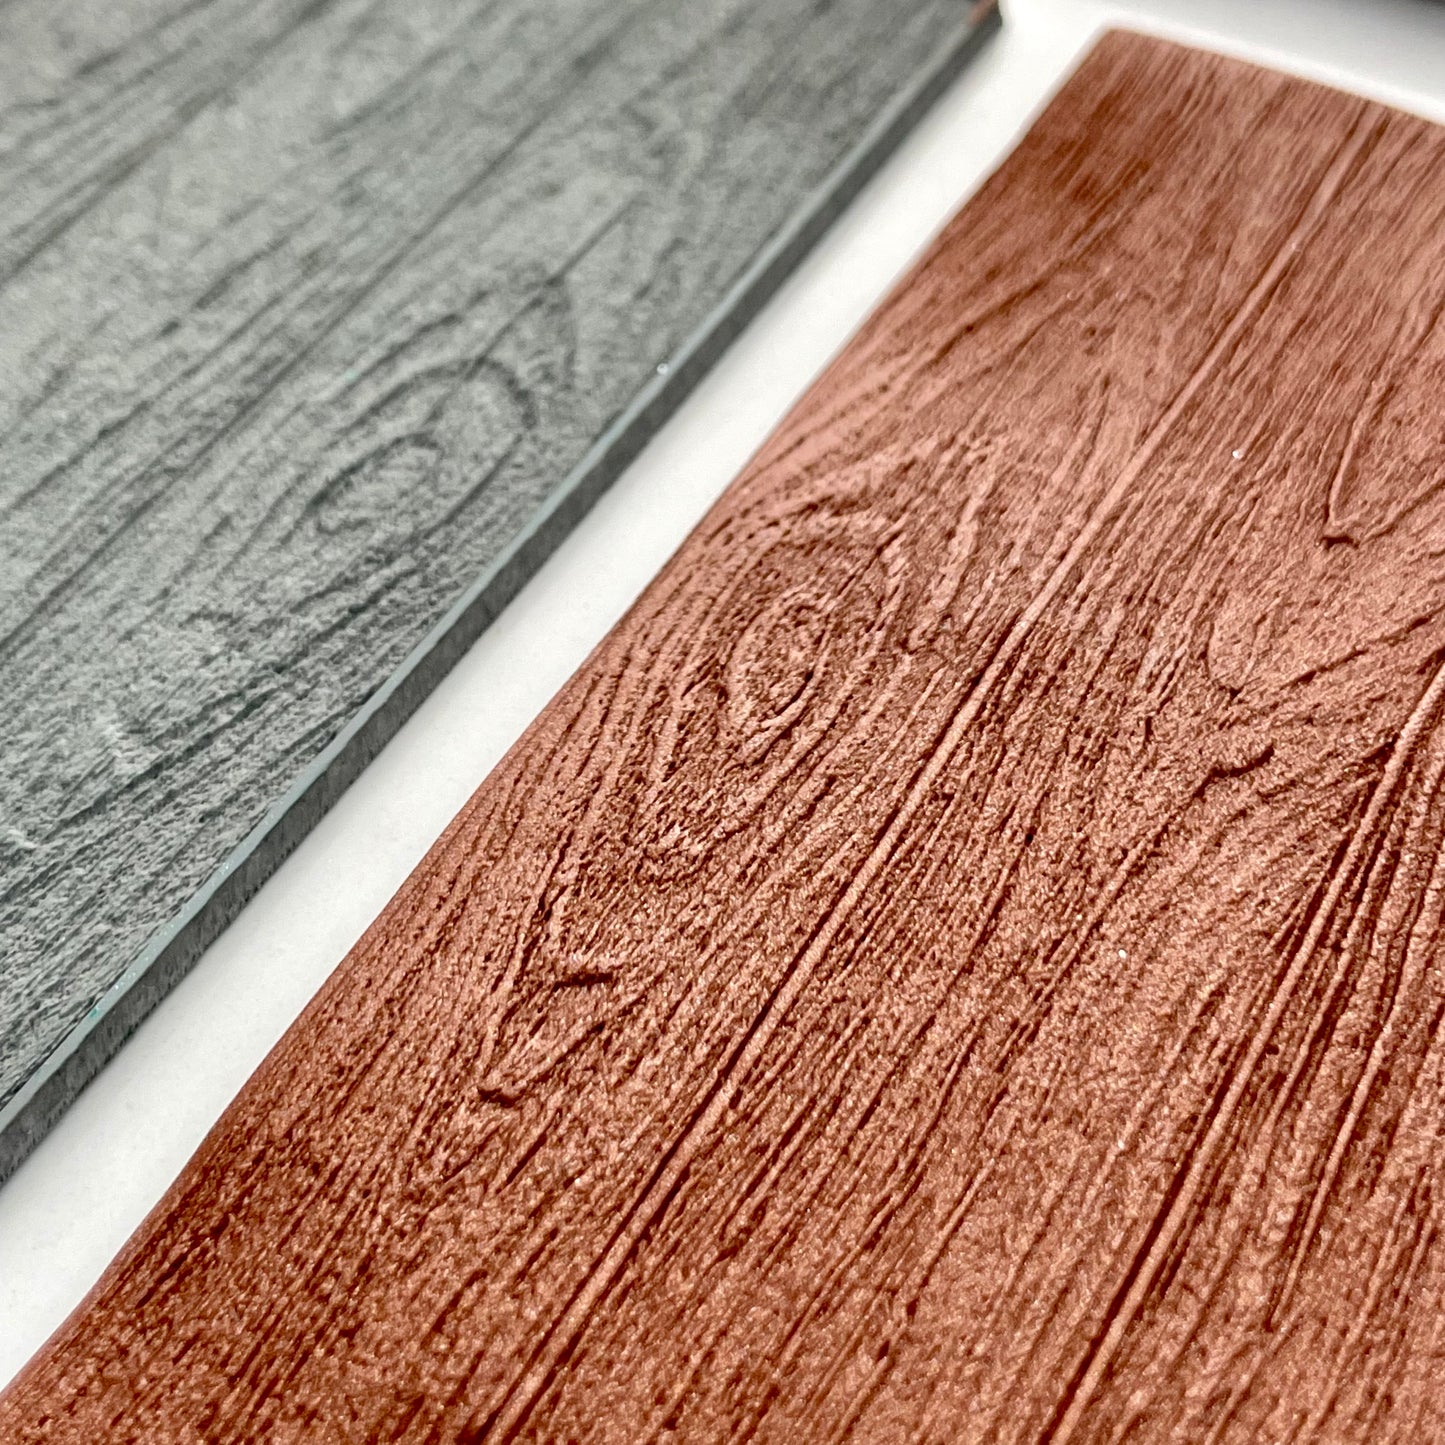 Wood grain texture mat